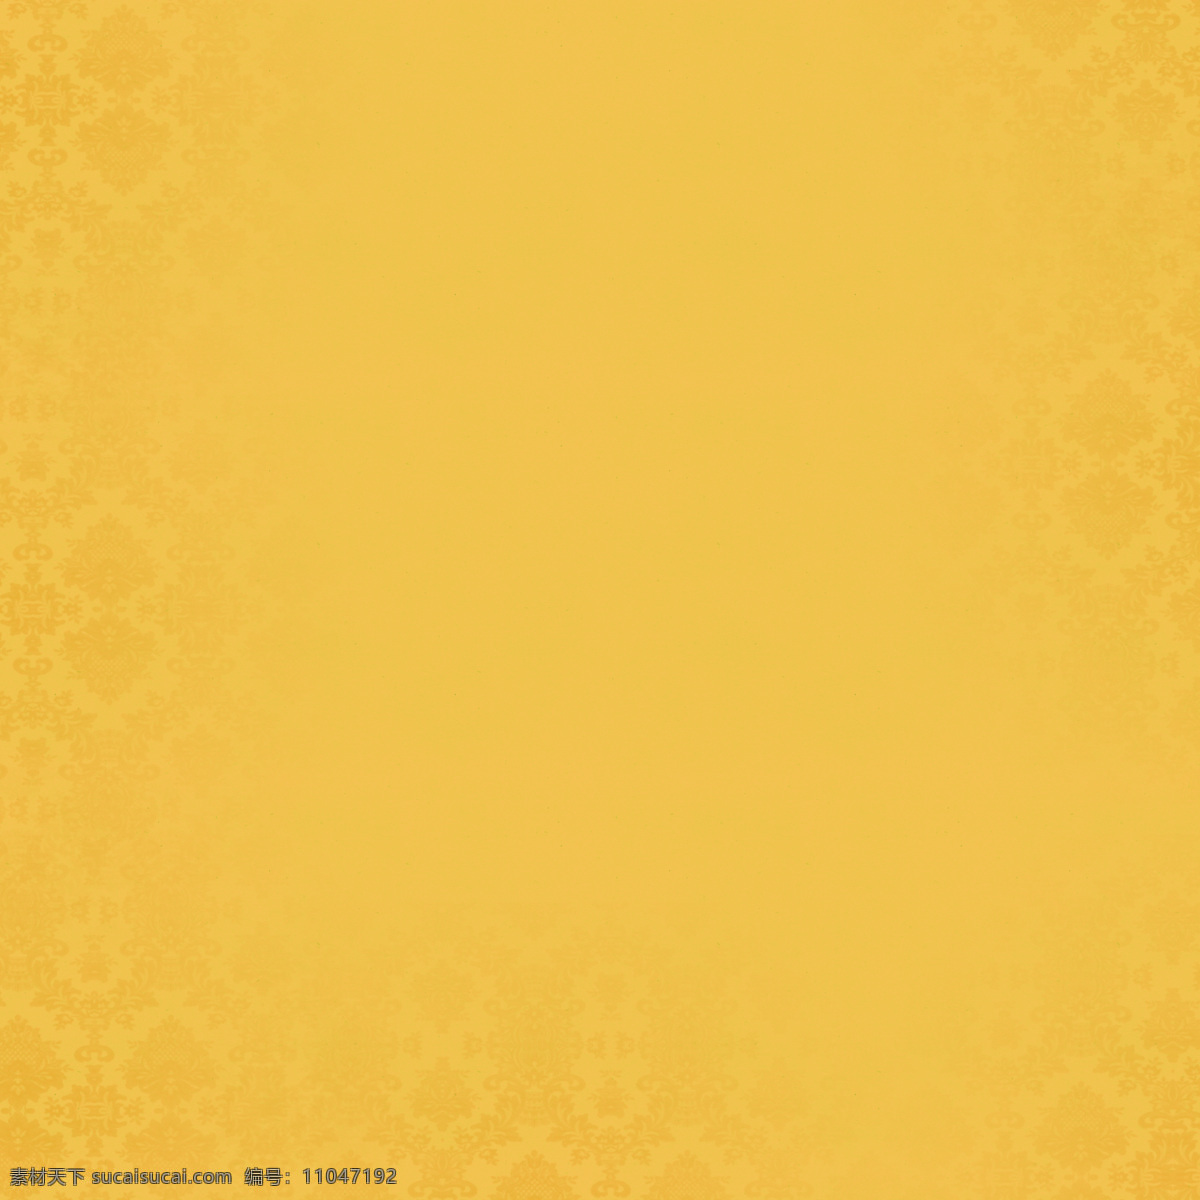 黄色印花背景 黄色背景 印花背景 花纹背景 黄色 简约